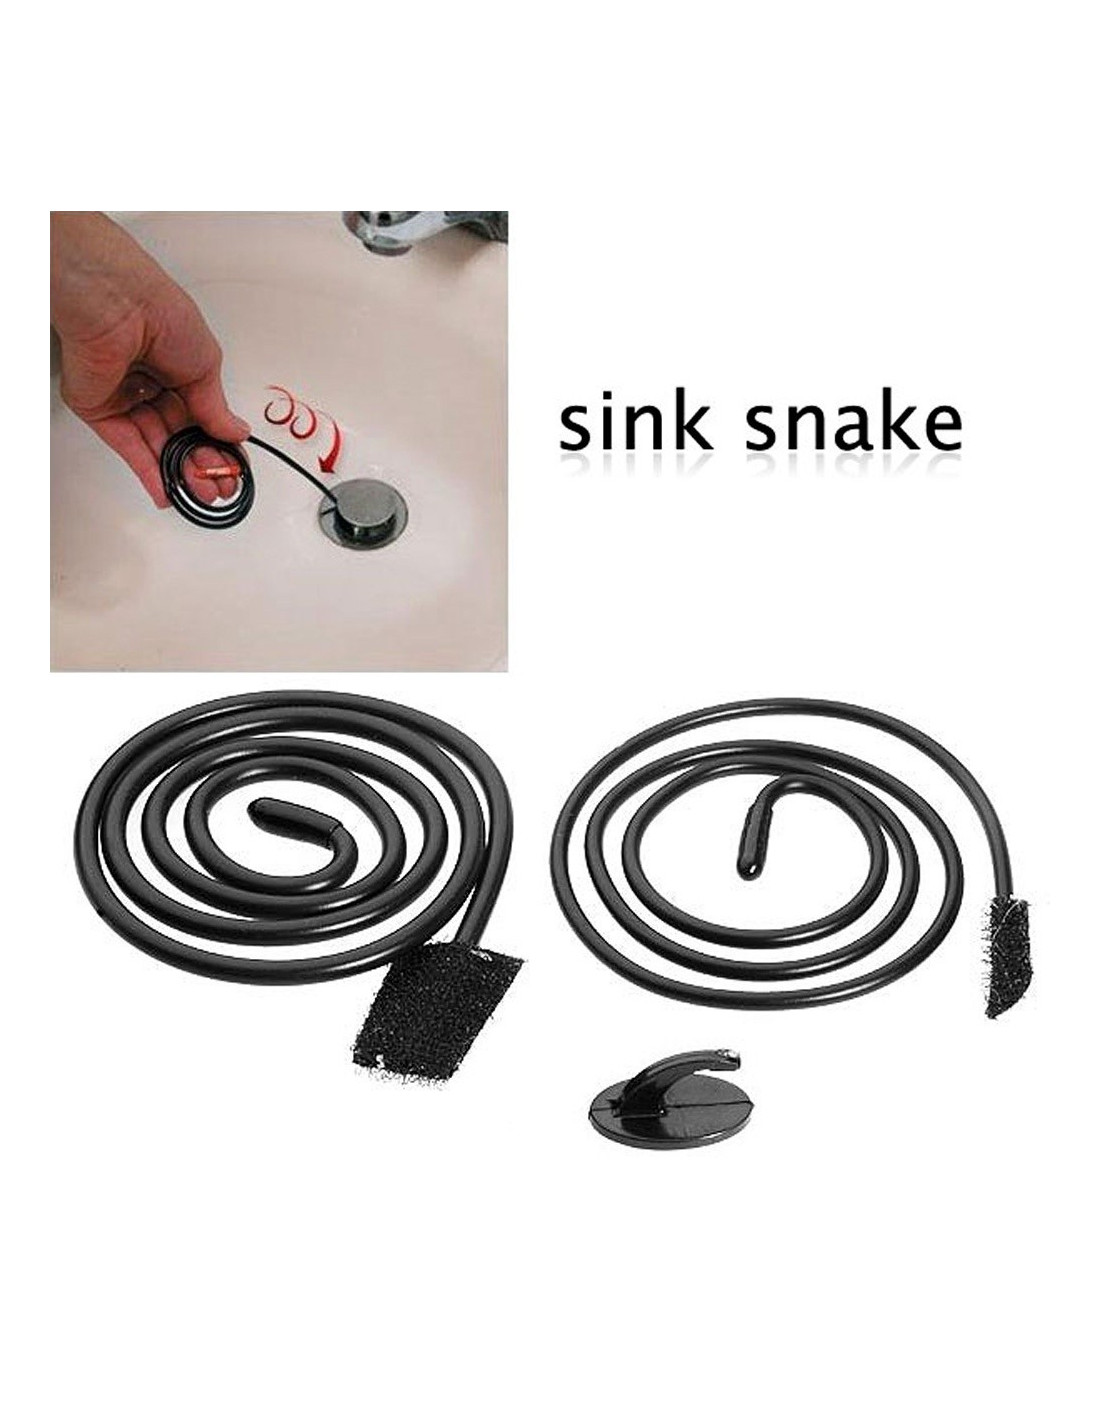 Stura lavandino e scarichi bagno sink snake tubo flessibile facile utilizzo